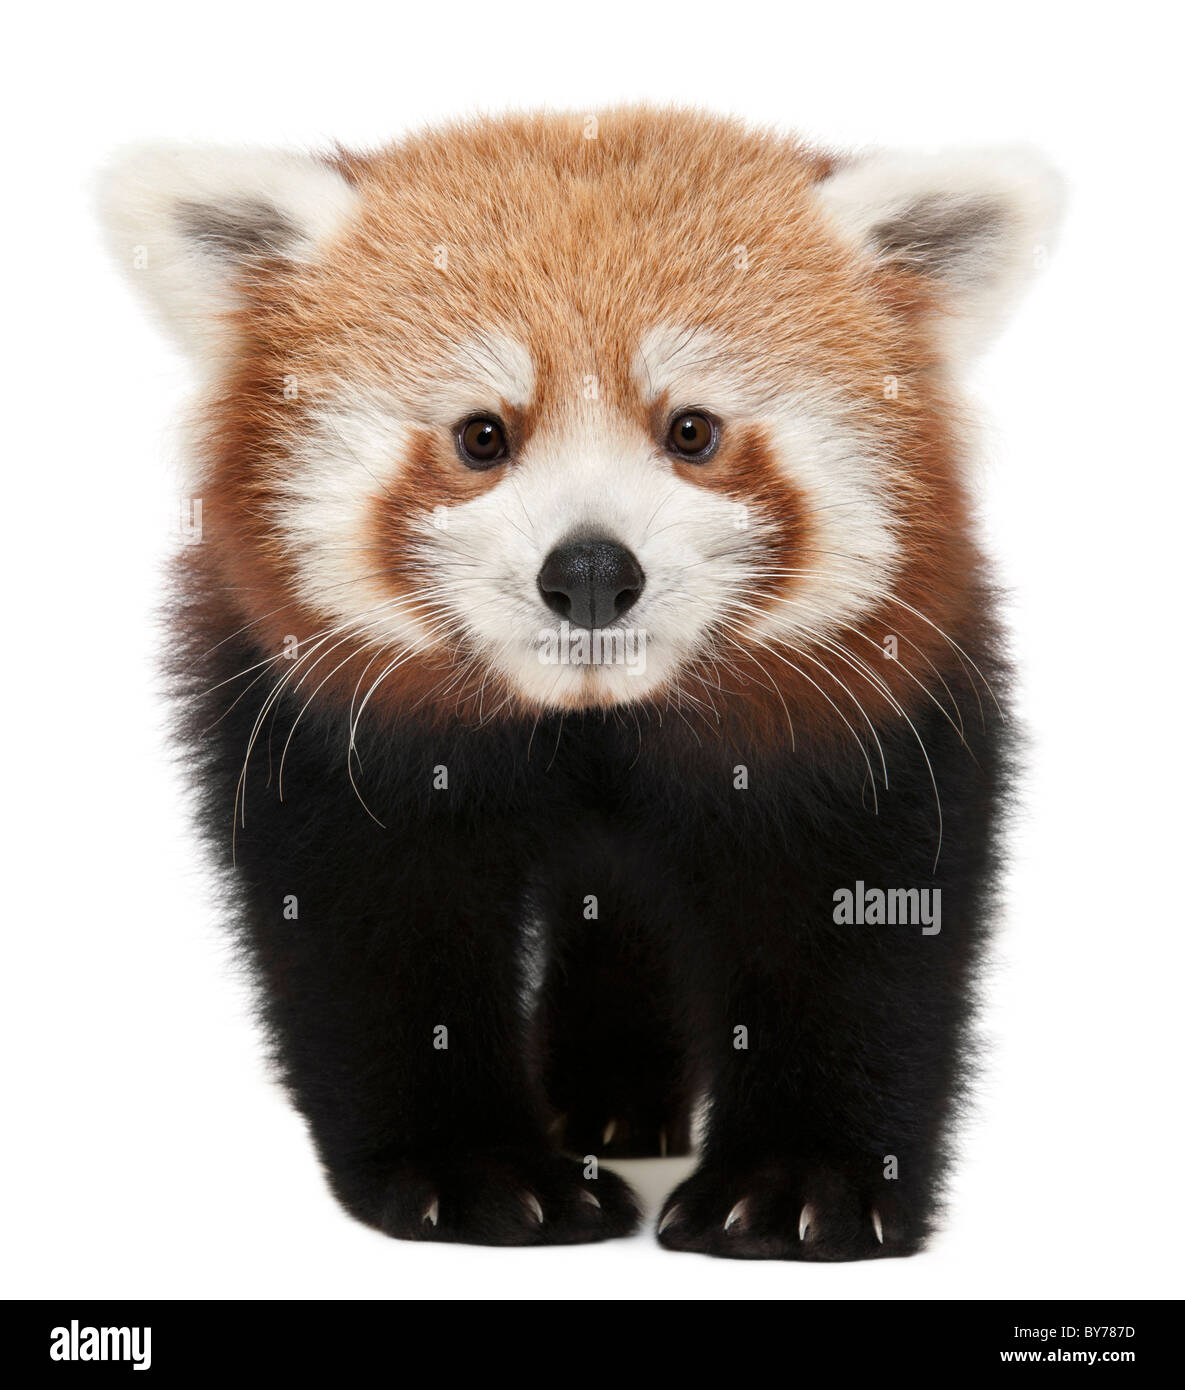 Giovane panda rosso o Shining cat, Ailurus fulgens, 7 mesi, di fronte a uno sfondo bianco Foto Stock